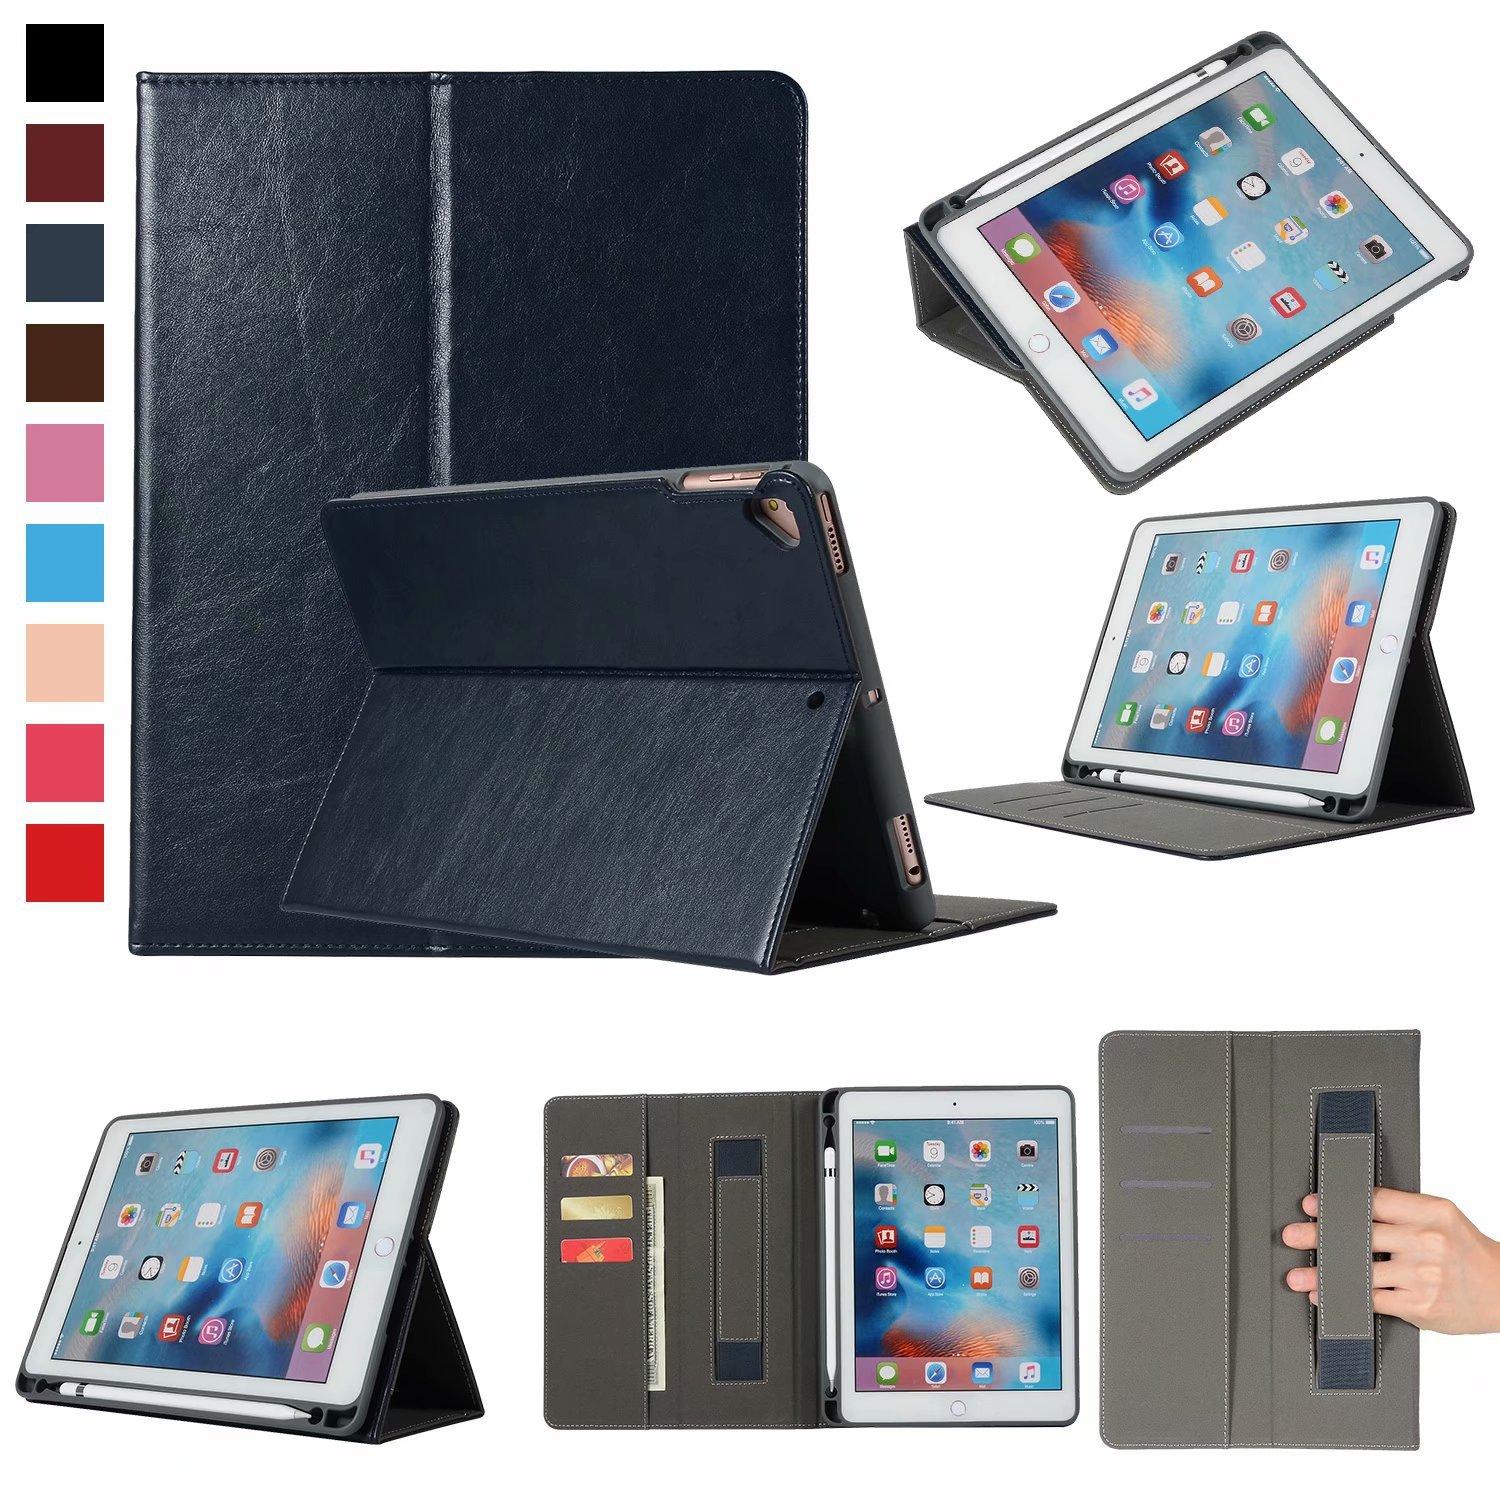 เคสฝาพับ พร้อมช่องเก็บปากกา(ใช้ใส่กันได้5รุ่น)ไอแพด โปร/แอร์1/แอร์2/ 2017/2018 (9.7) Case Cover With Pencil Holder For iPad2017/ iPad2018/ iPad Pro 9.7/ iPad Air1 / iPad Air2 (9.7")